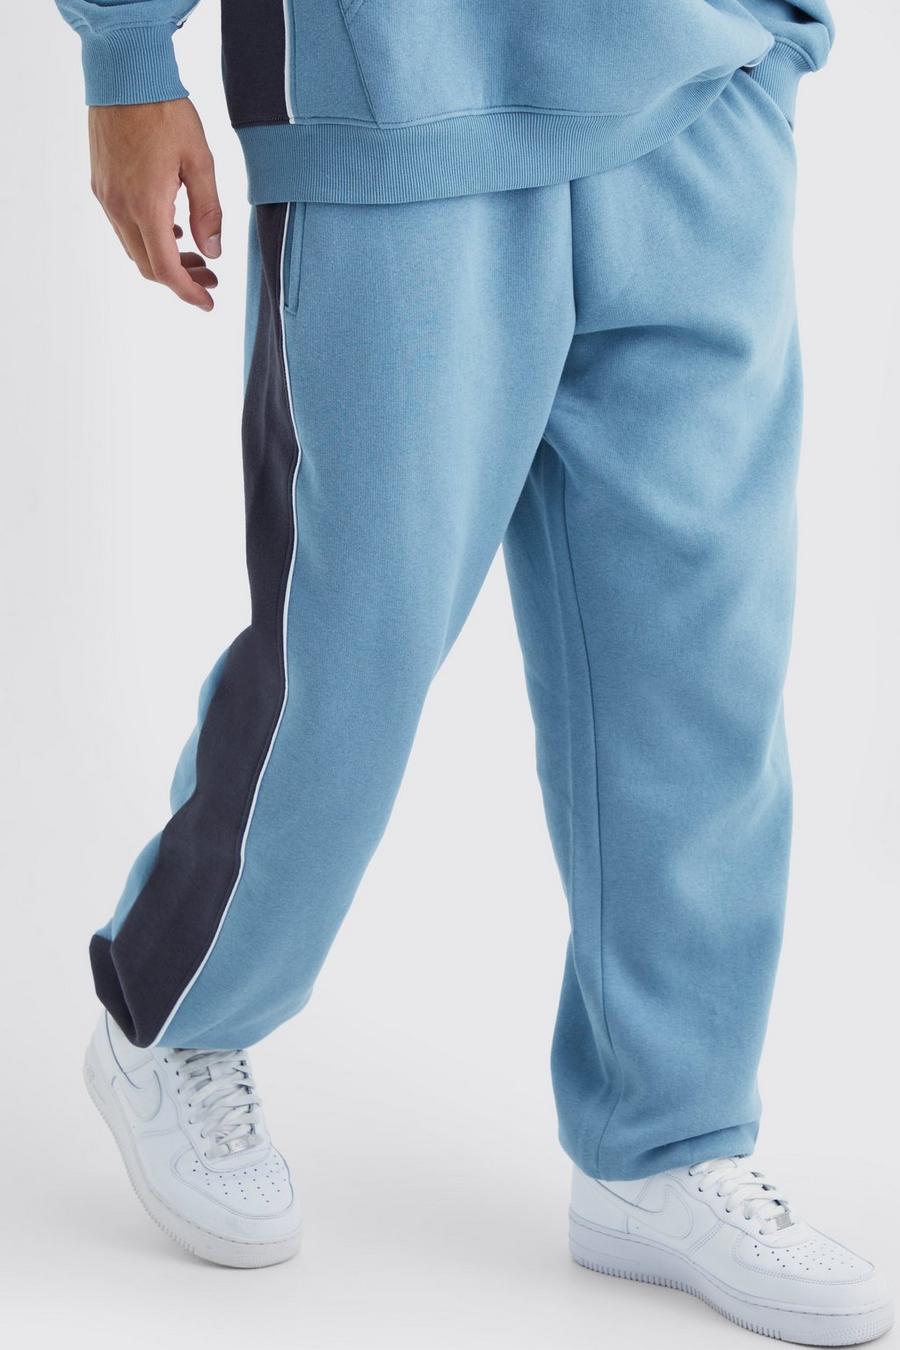 Pantaloni tuta oversize a blocchi di colore con cordoncino, Dusty blue